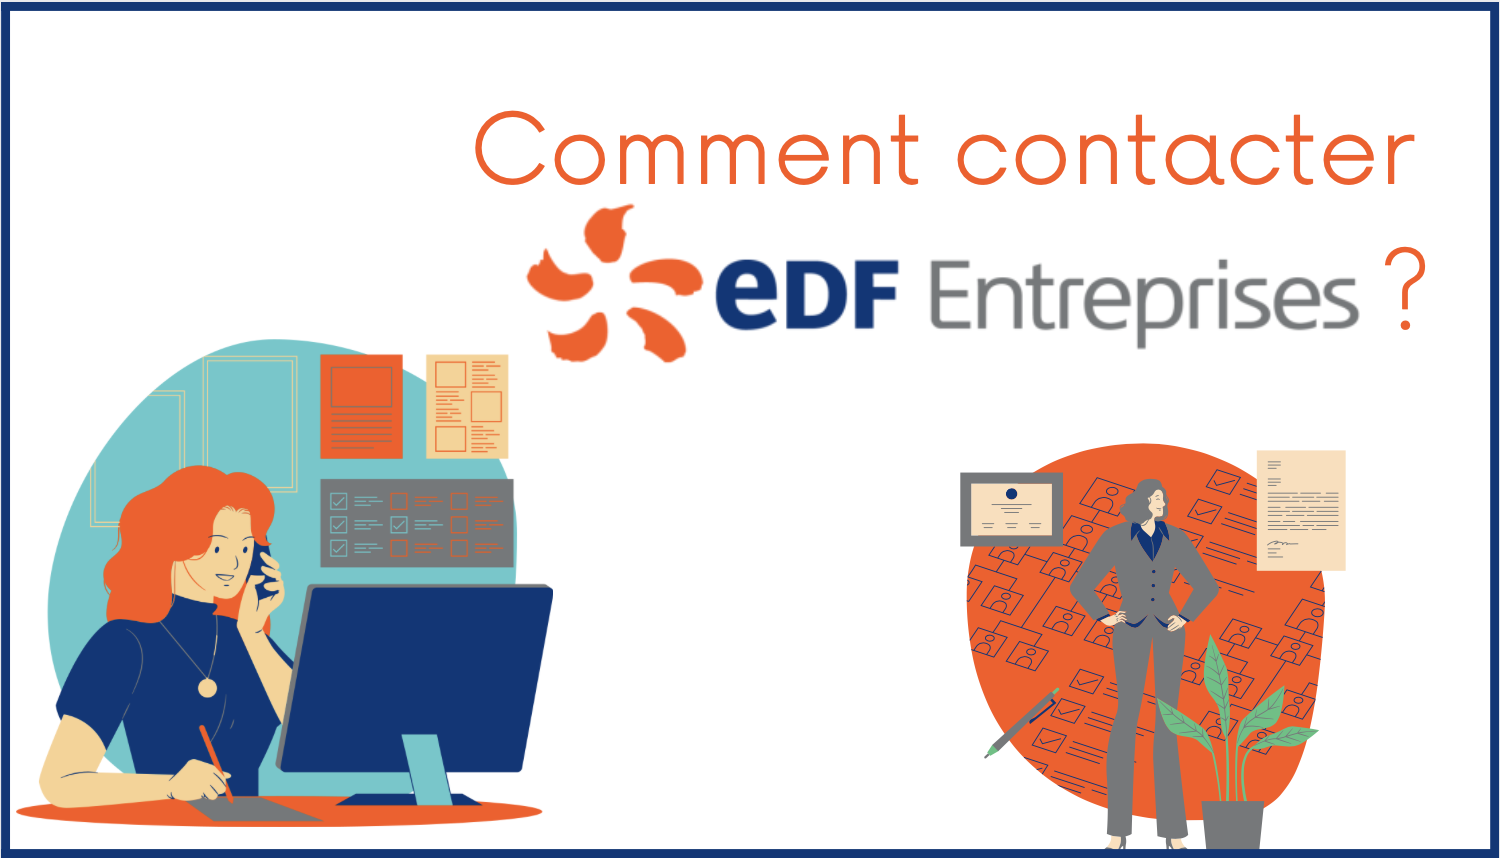 Comment contacter EDF Entreprises ? 